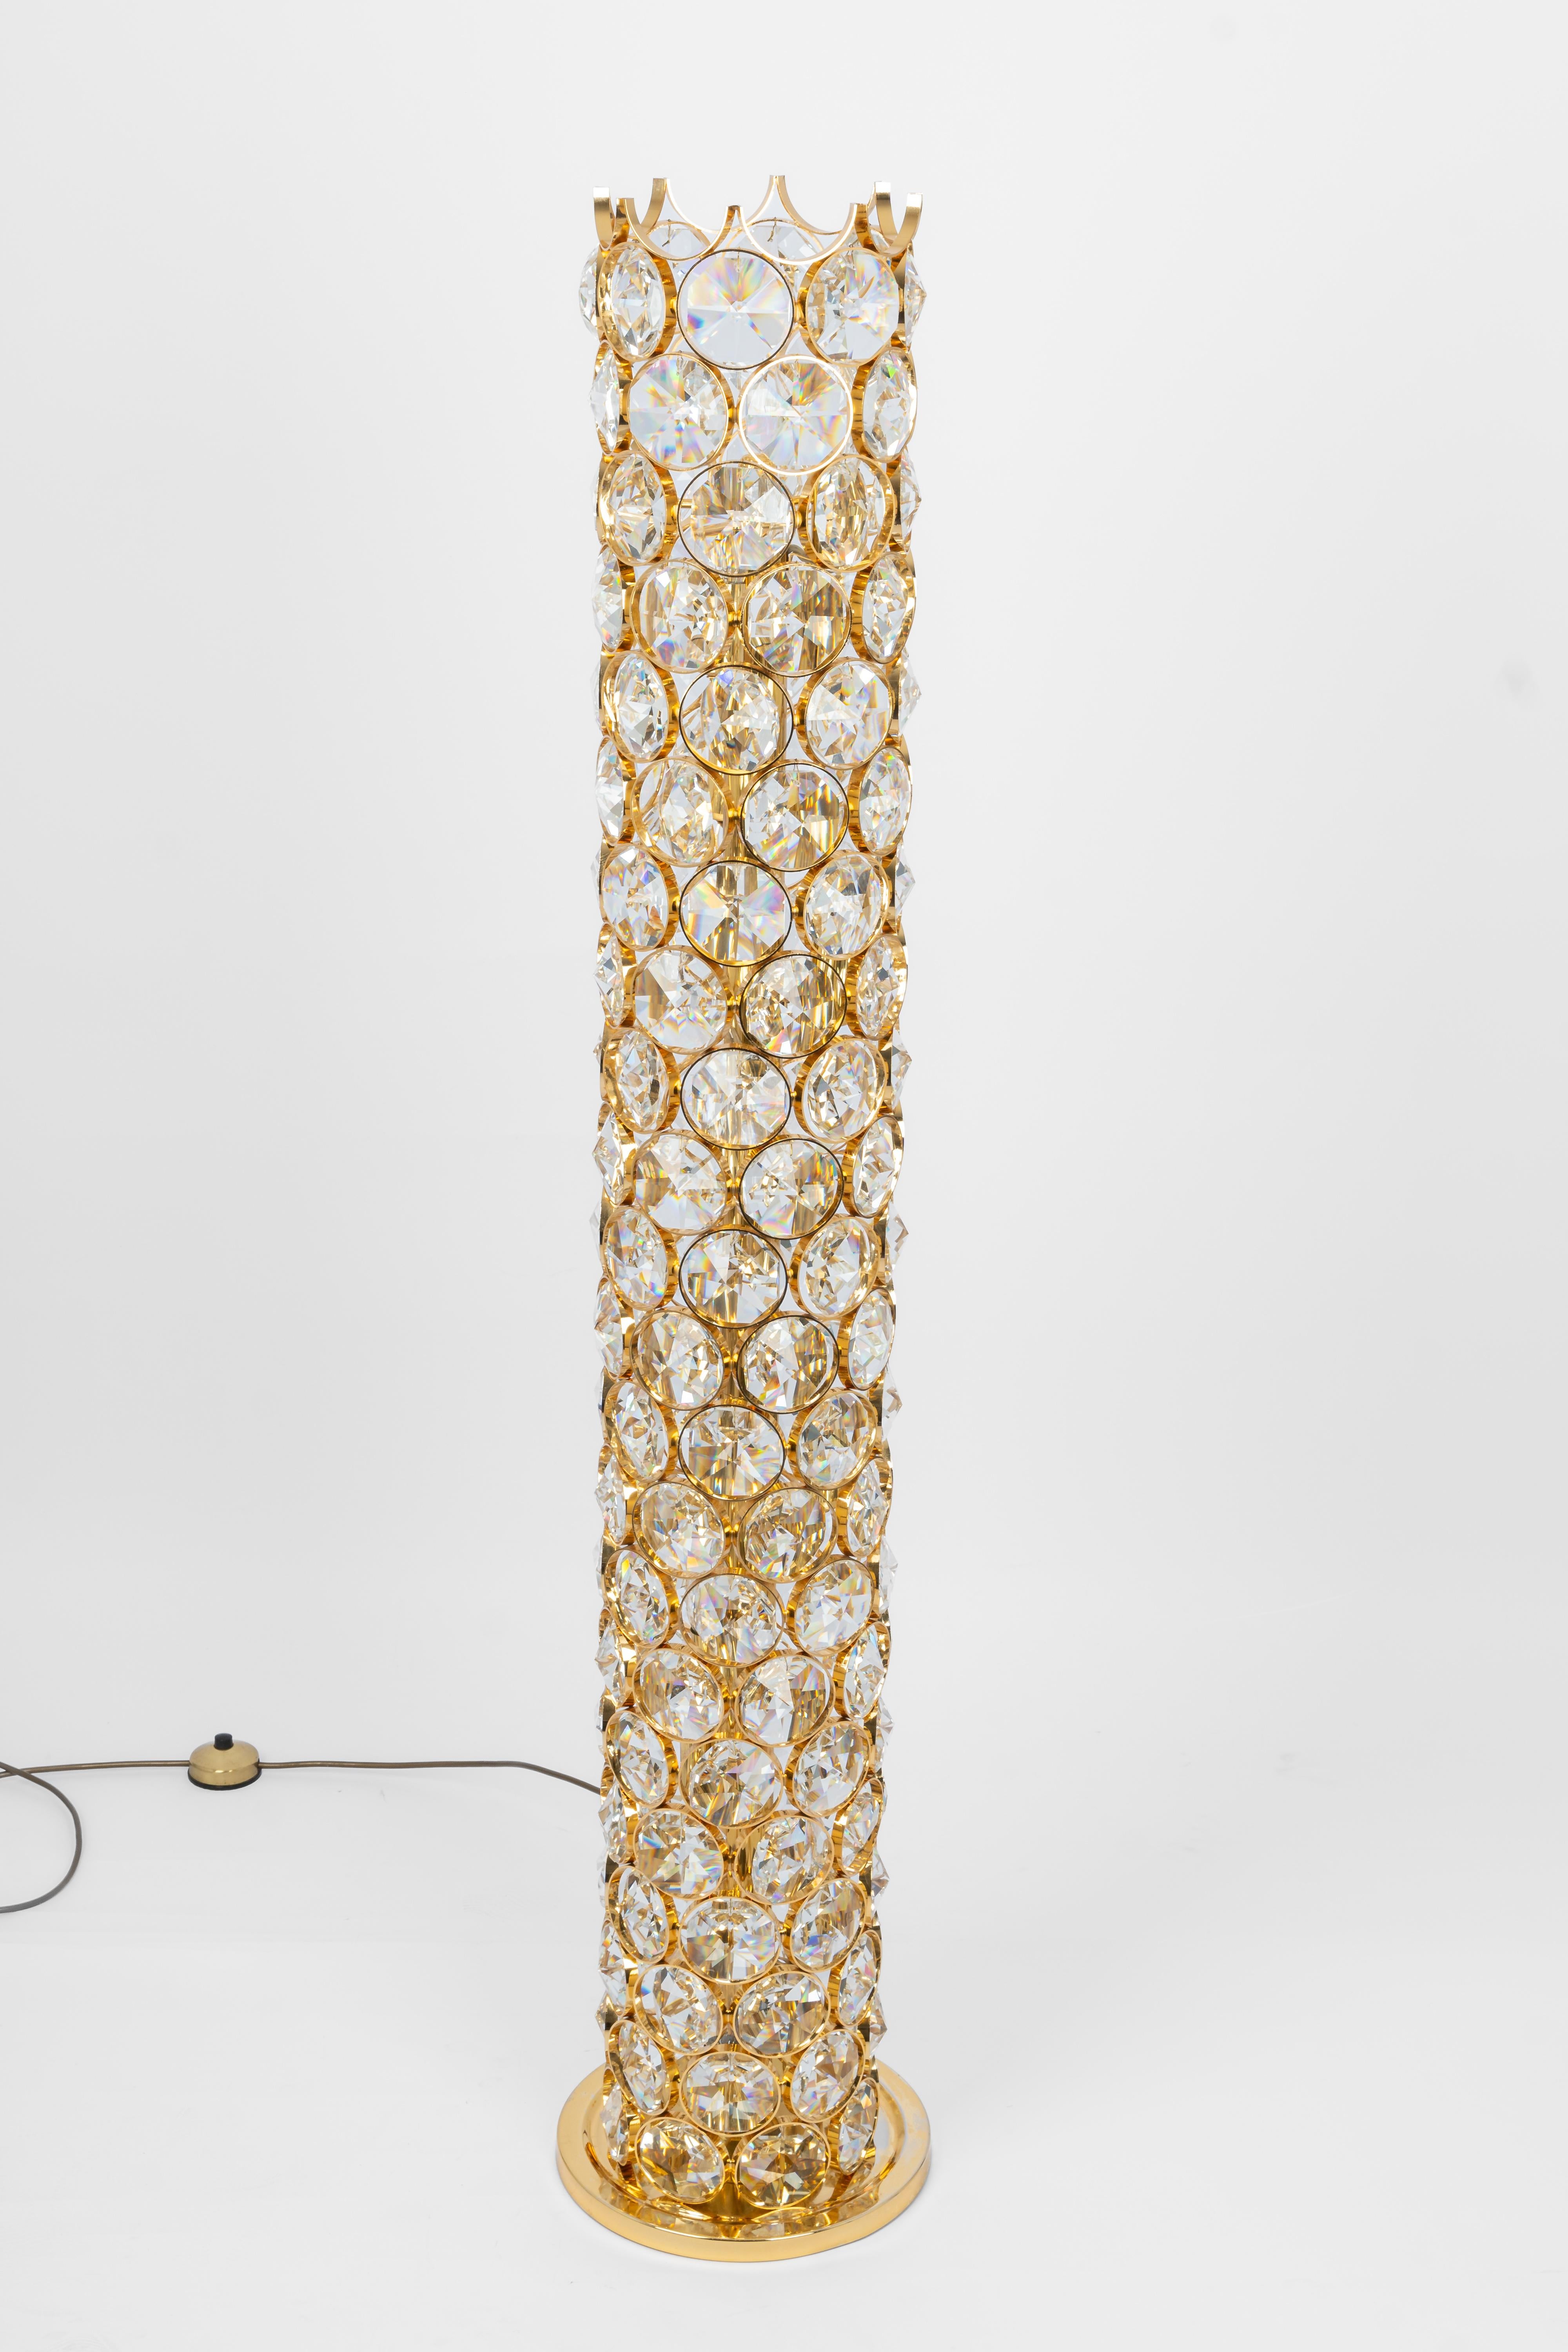 Exquisite vergoldete Juwelen-Stehleuchte Sciolari design by Palwa, Deutschland, 1960er Jahre
Hollywood Regency, wunderschöne Form und Lichteffekt, handgefertigt.
12 x E14 Glühbirnen (max. 40 Watt pro Glühbirne)
Sehr guter